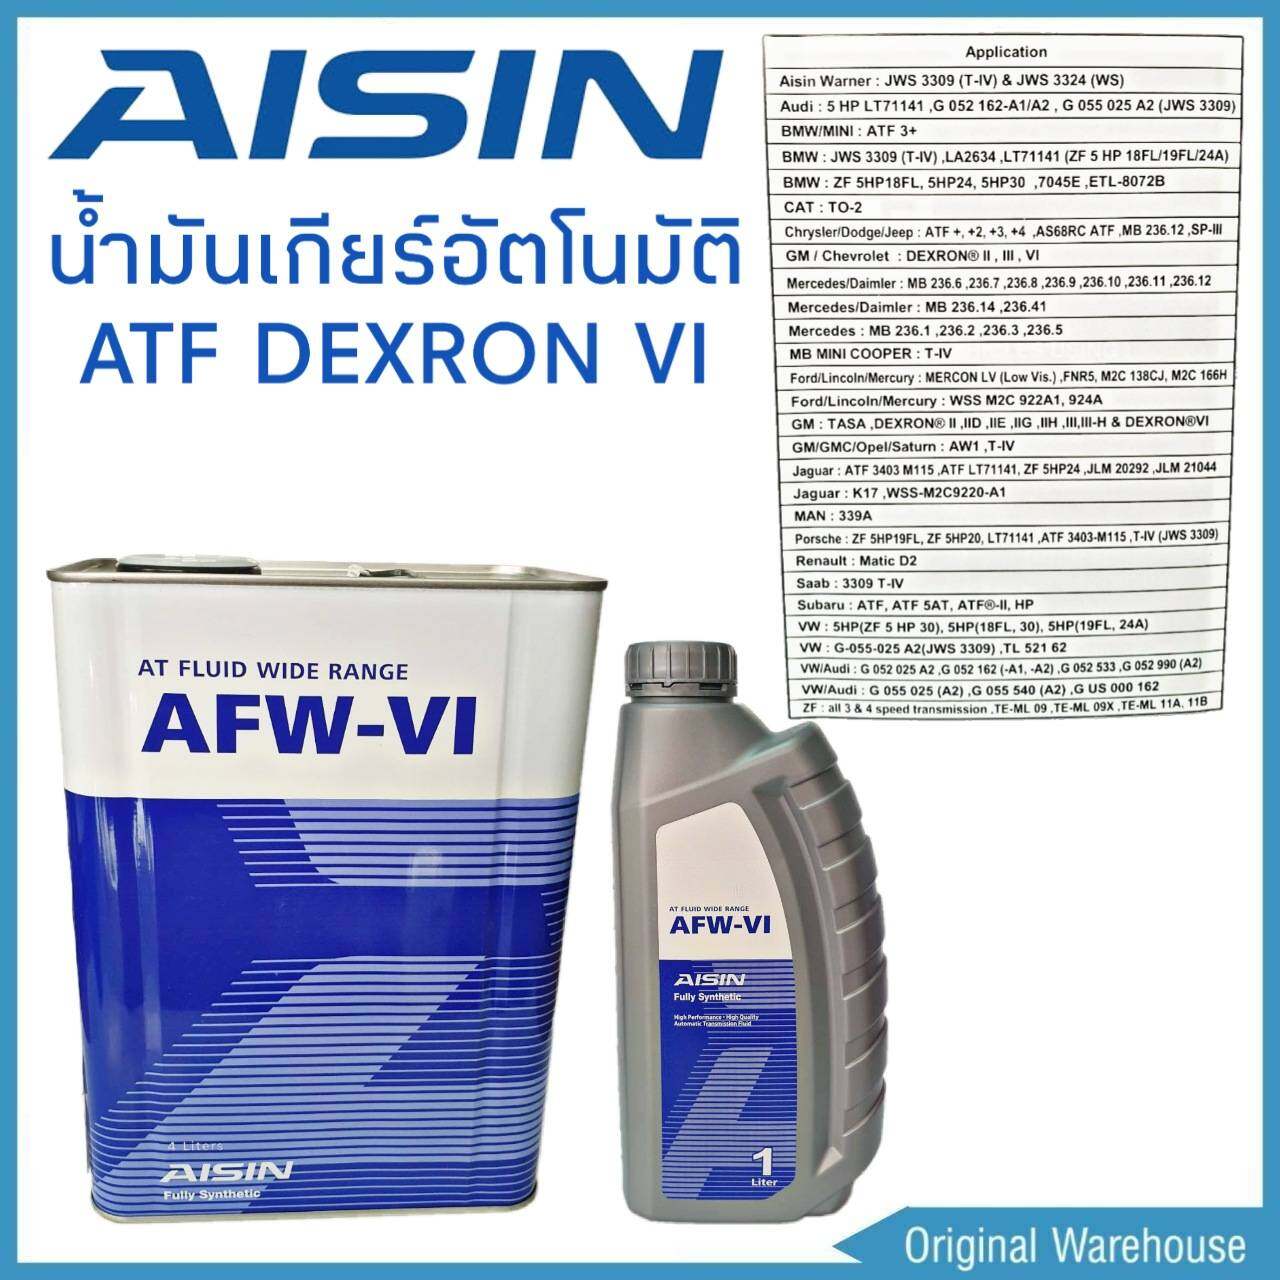 มุมมองเพิ่มเติมของสินค้า AISIN น้ำมันเกียร์อัตโนมัติ AISIN AFW-VI น้ำมันเกียร์ ATF DEXRON VI สังเคราะห์ (4ลิตร) (5ลิตร) (6ลิตร) (7ลิตร) (8ลิตร) #เลือกซื้อสินค้าได้เลยค่ะ